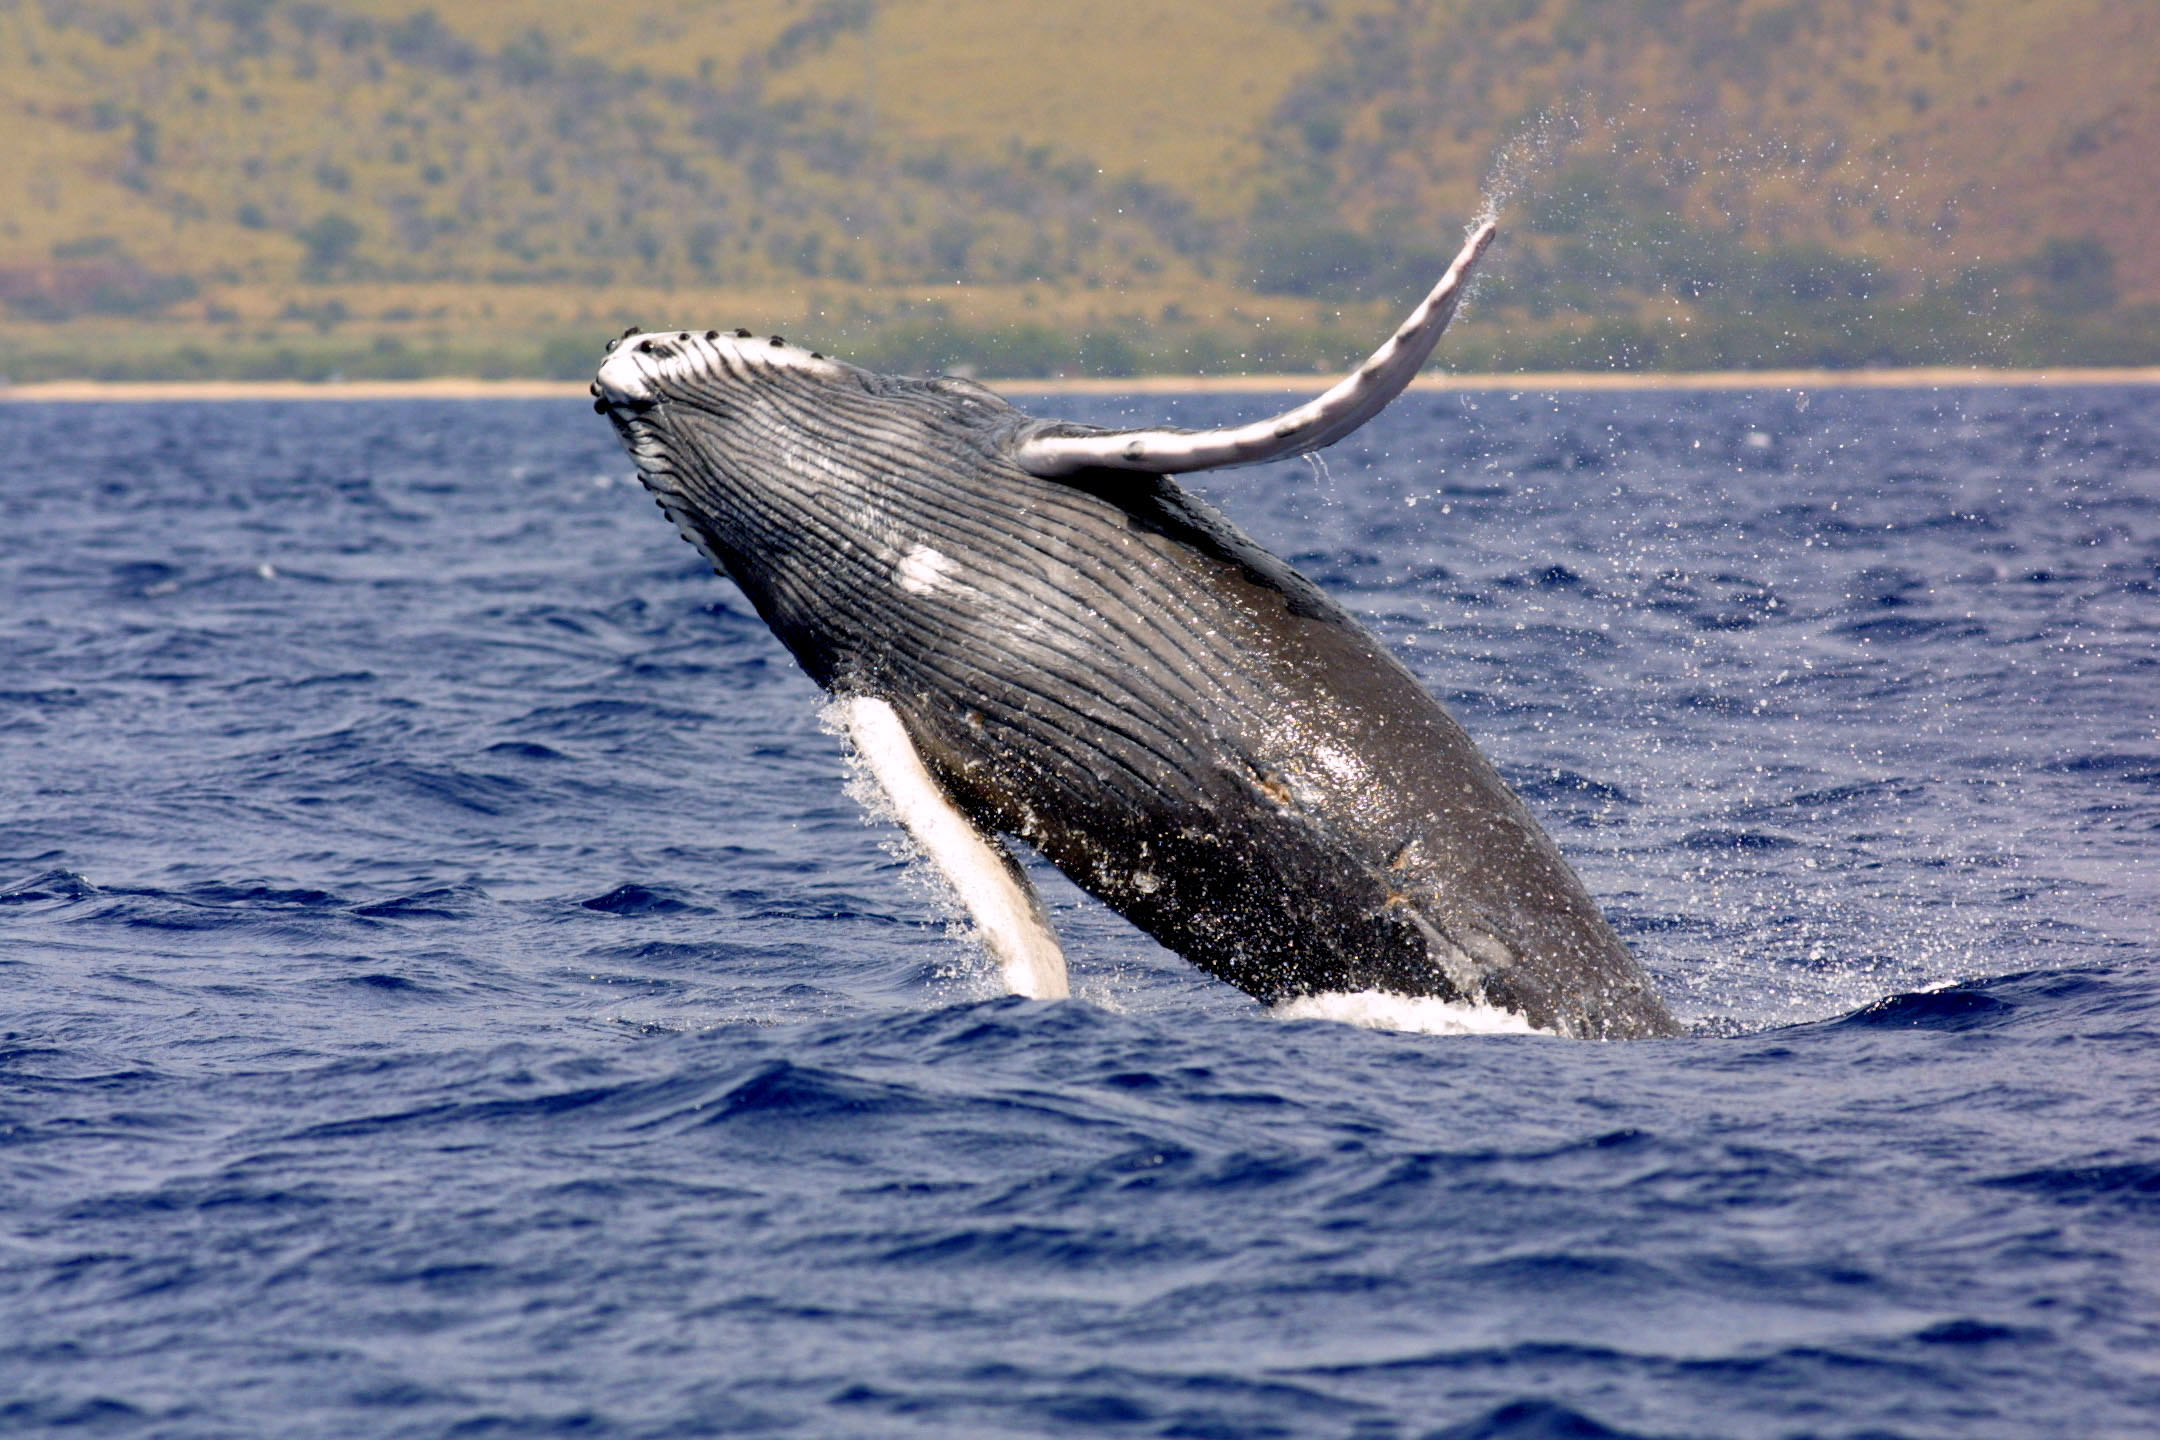 File:Humpback whale noaa.jpg